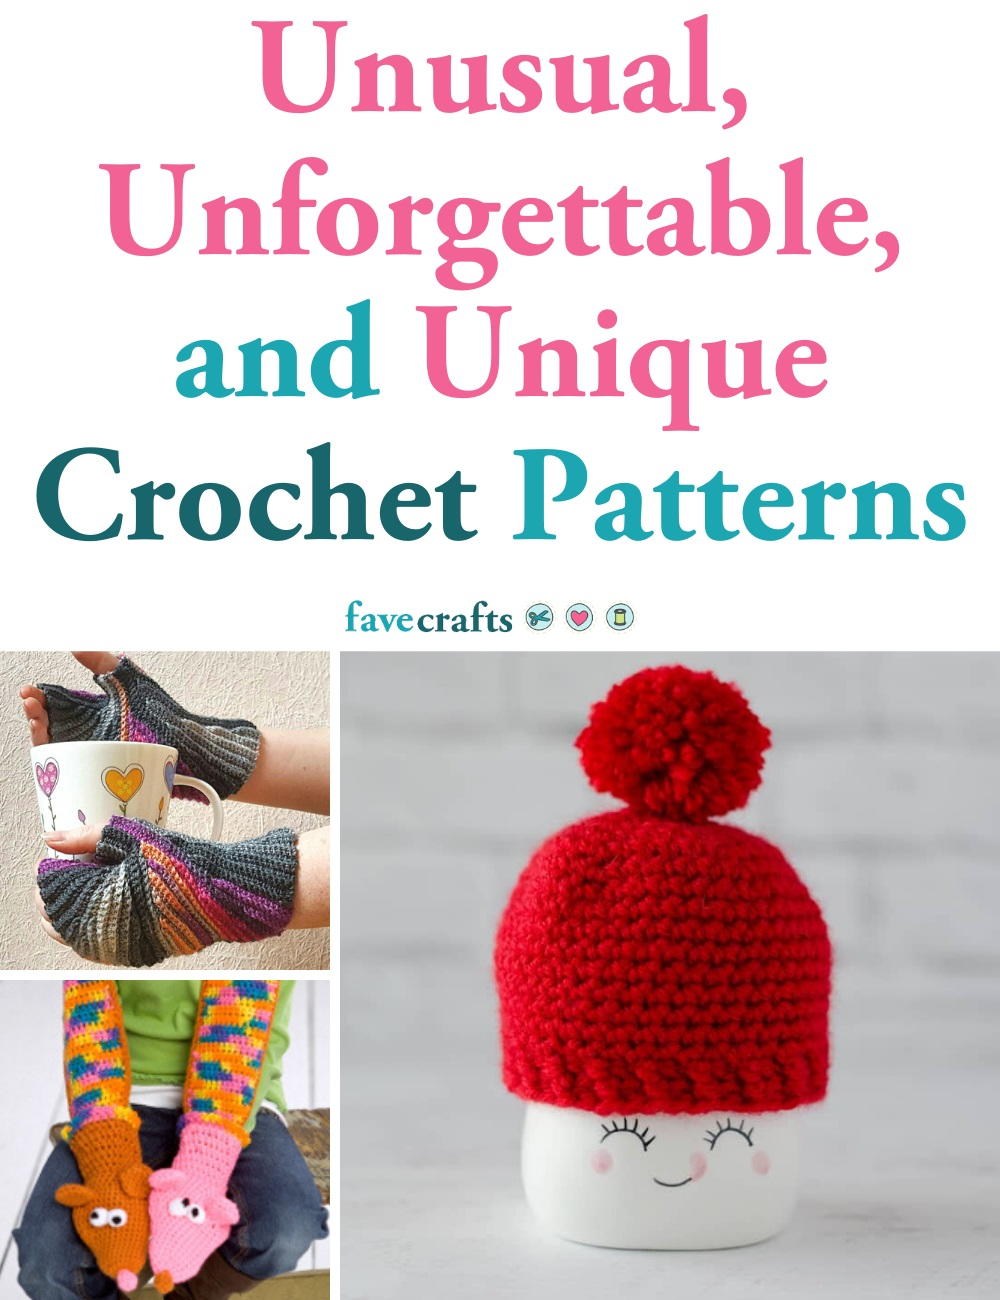 9 Unusual, Unique Crochet Patterns   FaveCrafts.com